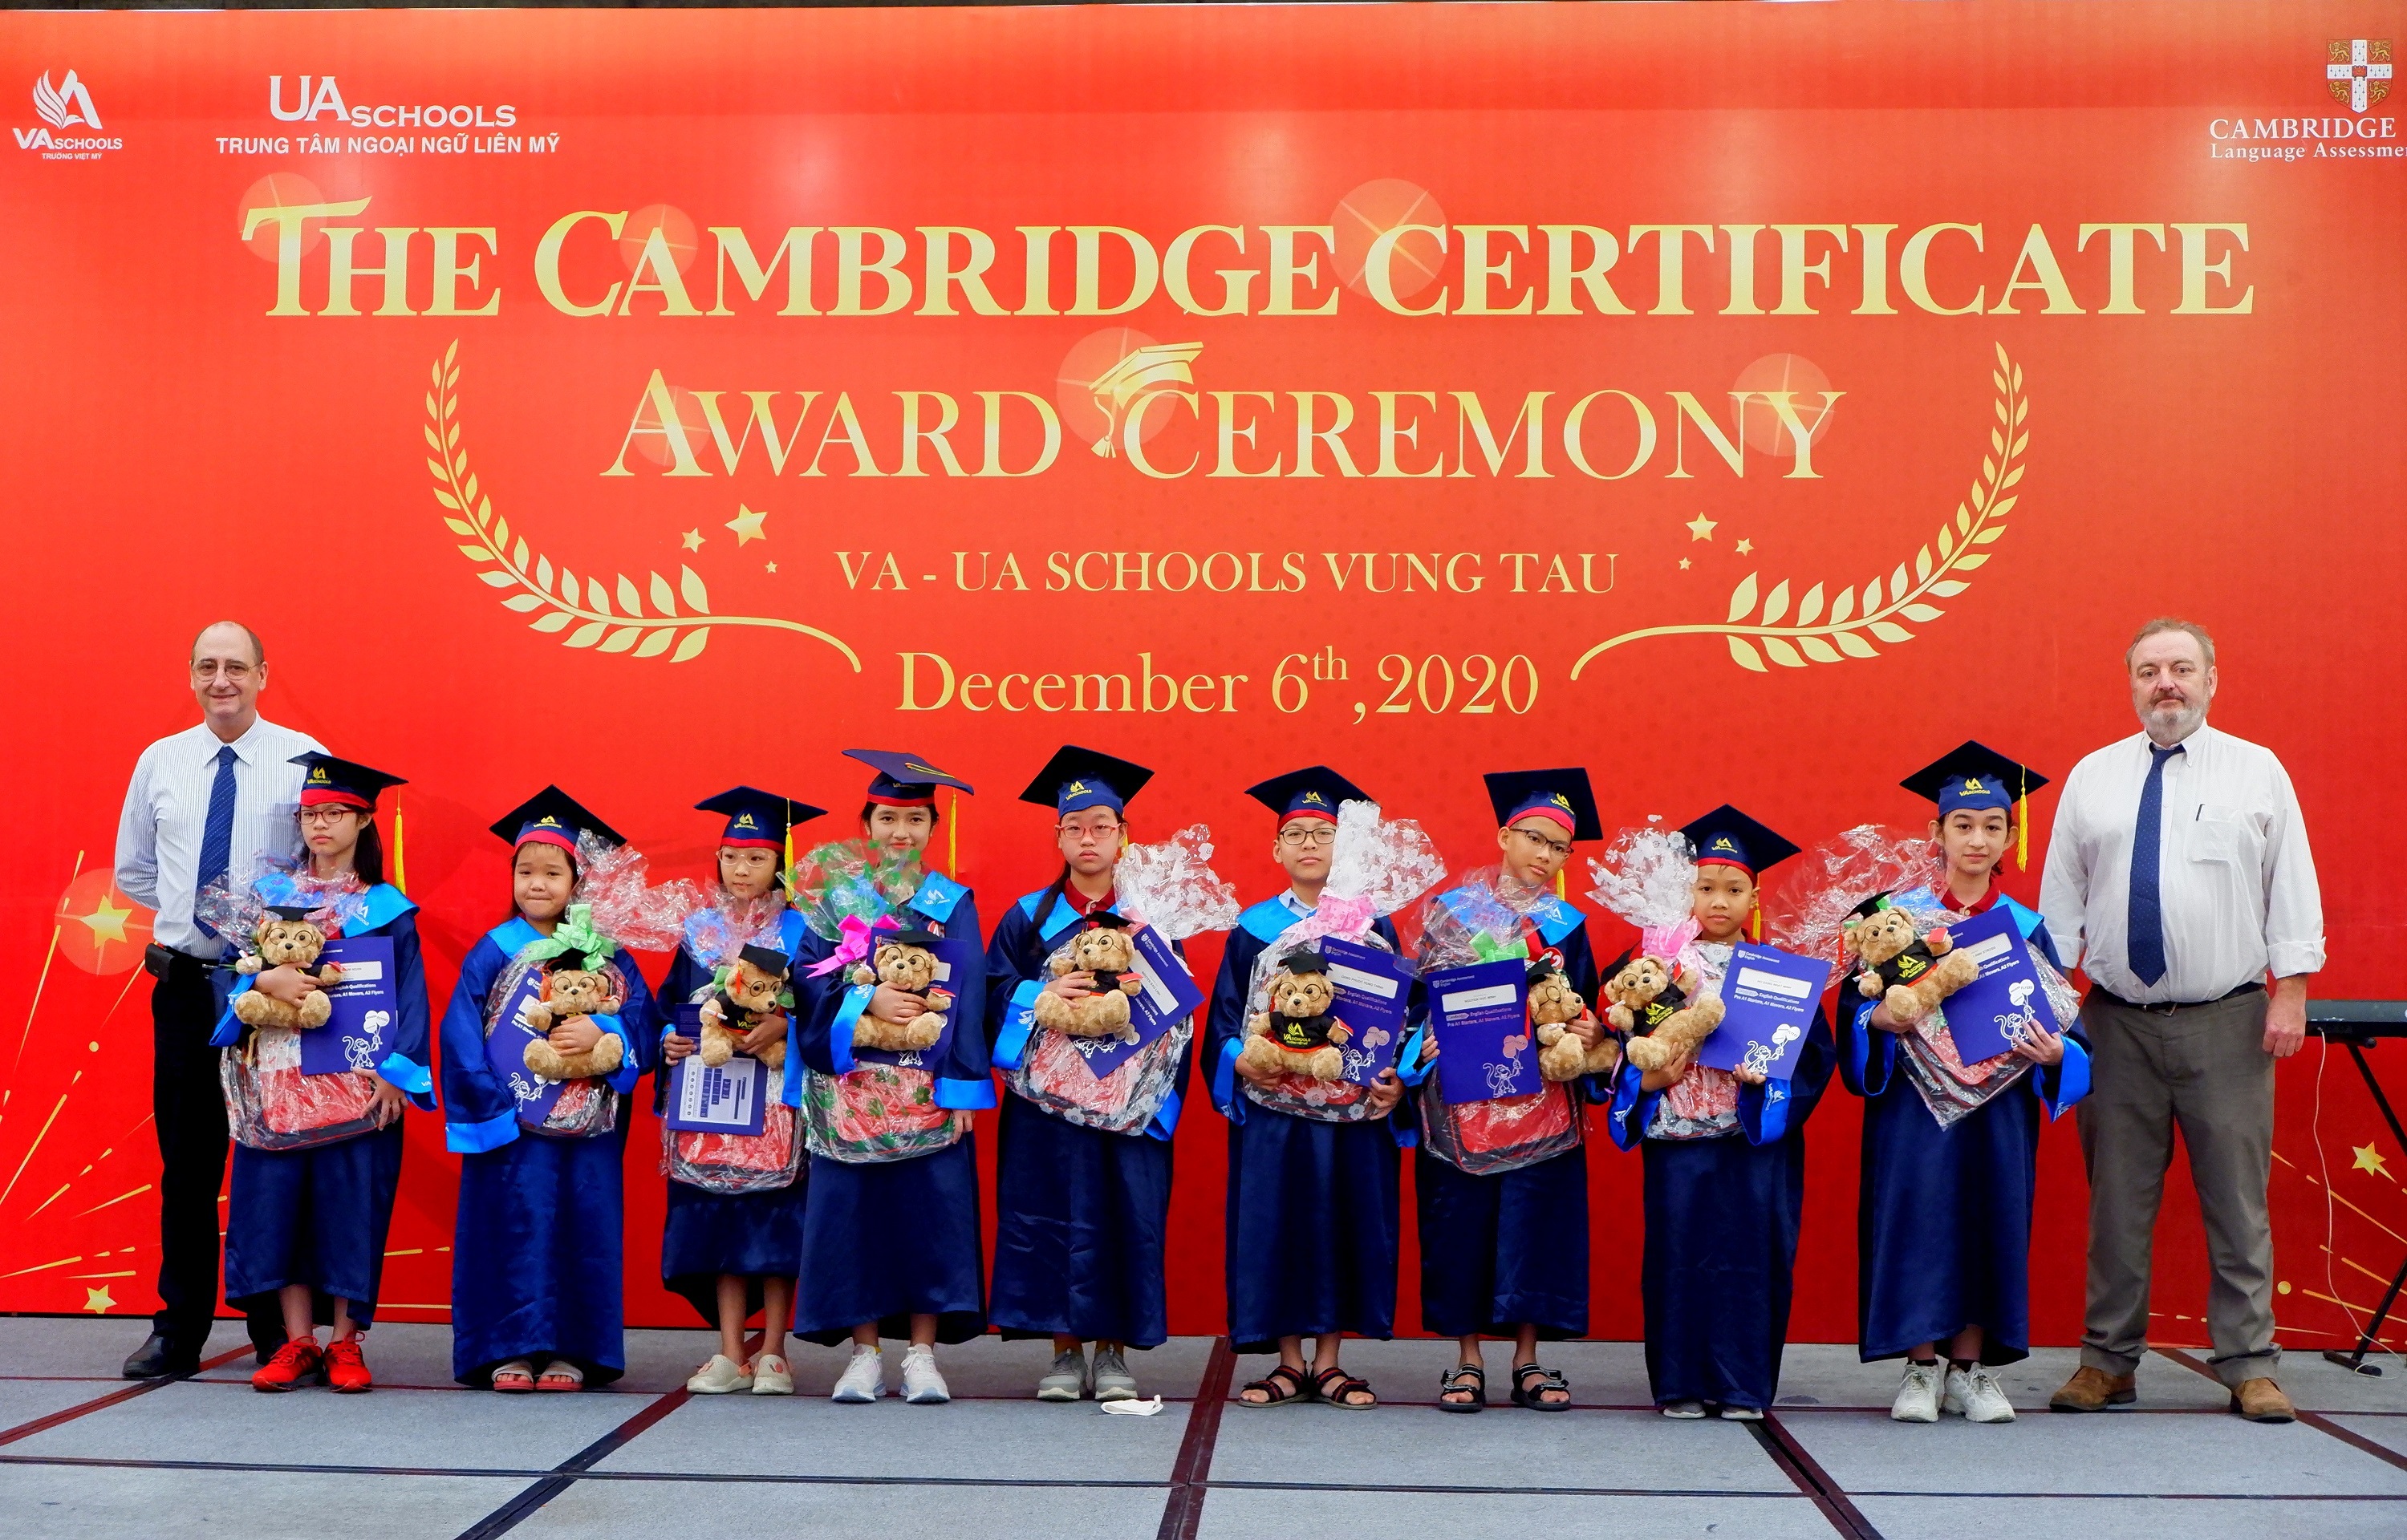 Hàng năm, học sinh tiểu học sẽ tham dự kỳ thi Cambridge theo quy định để đánh giá khả năng tiếng Anh và lấy các chứng chỉ quốc tế như: Starters, Movers, Flyers. Sau khi hoàn thành bậc tiểu học, các em có cơ hội chuyển tiếp lên trung học trong Hệ thống trường Việt Mỹ để học tiếp chương trình song ngữ.